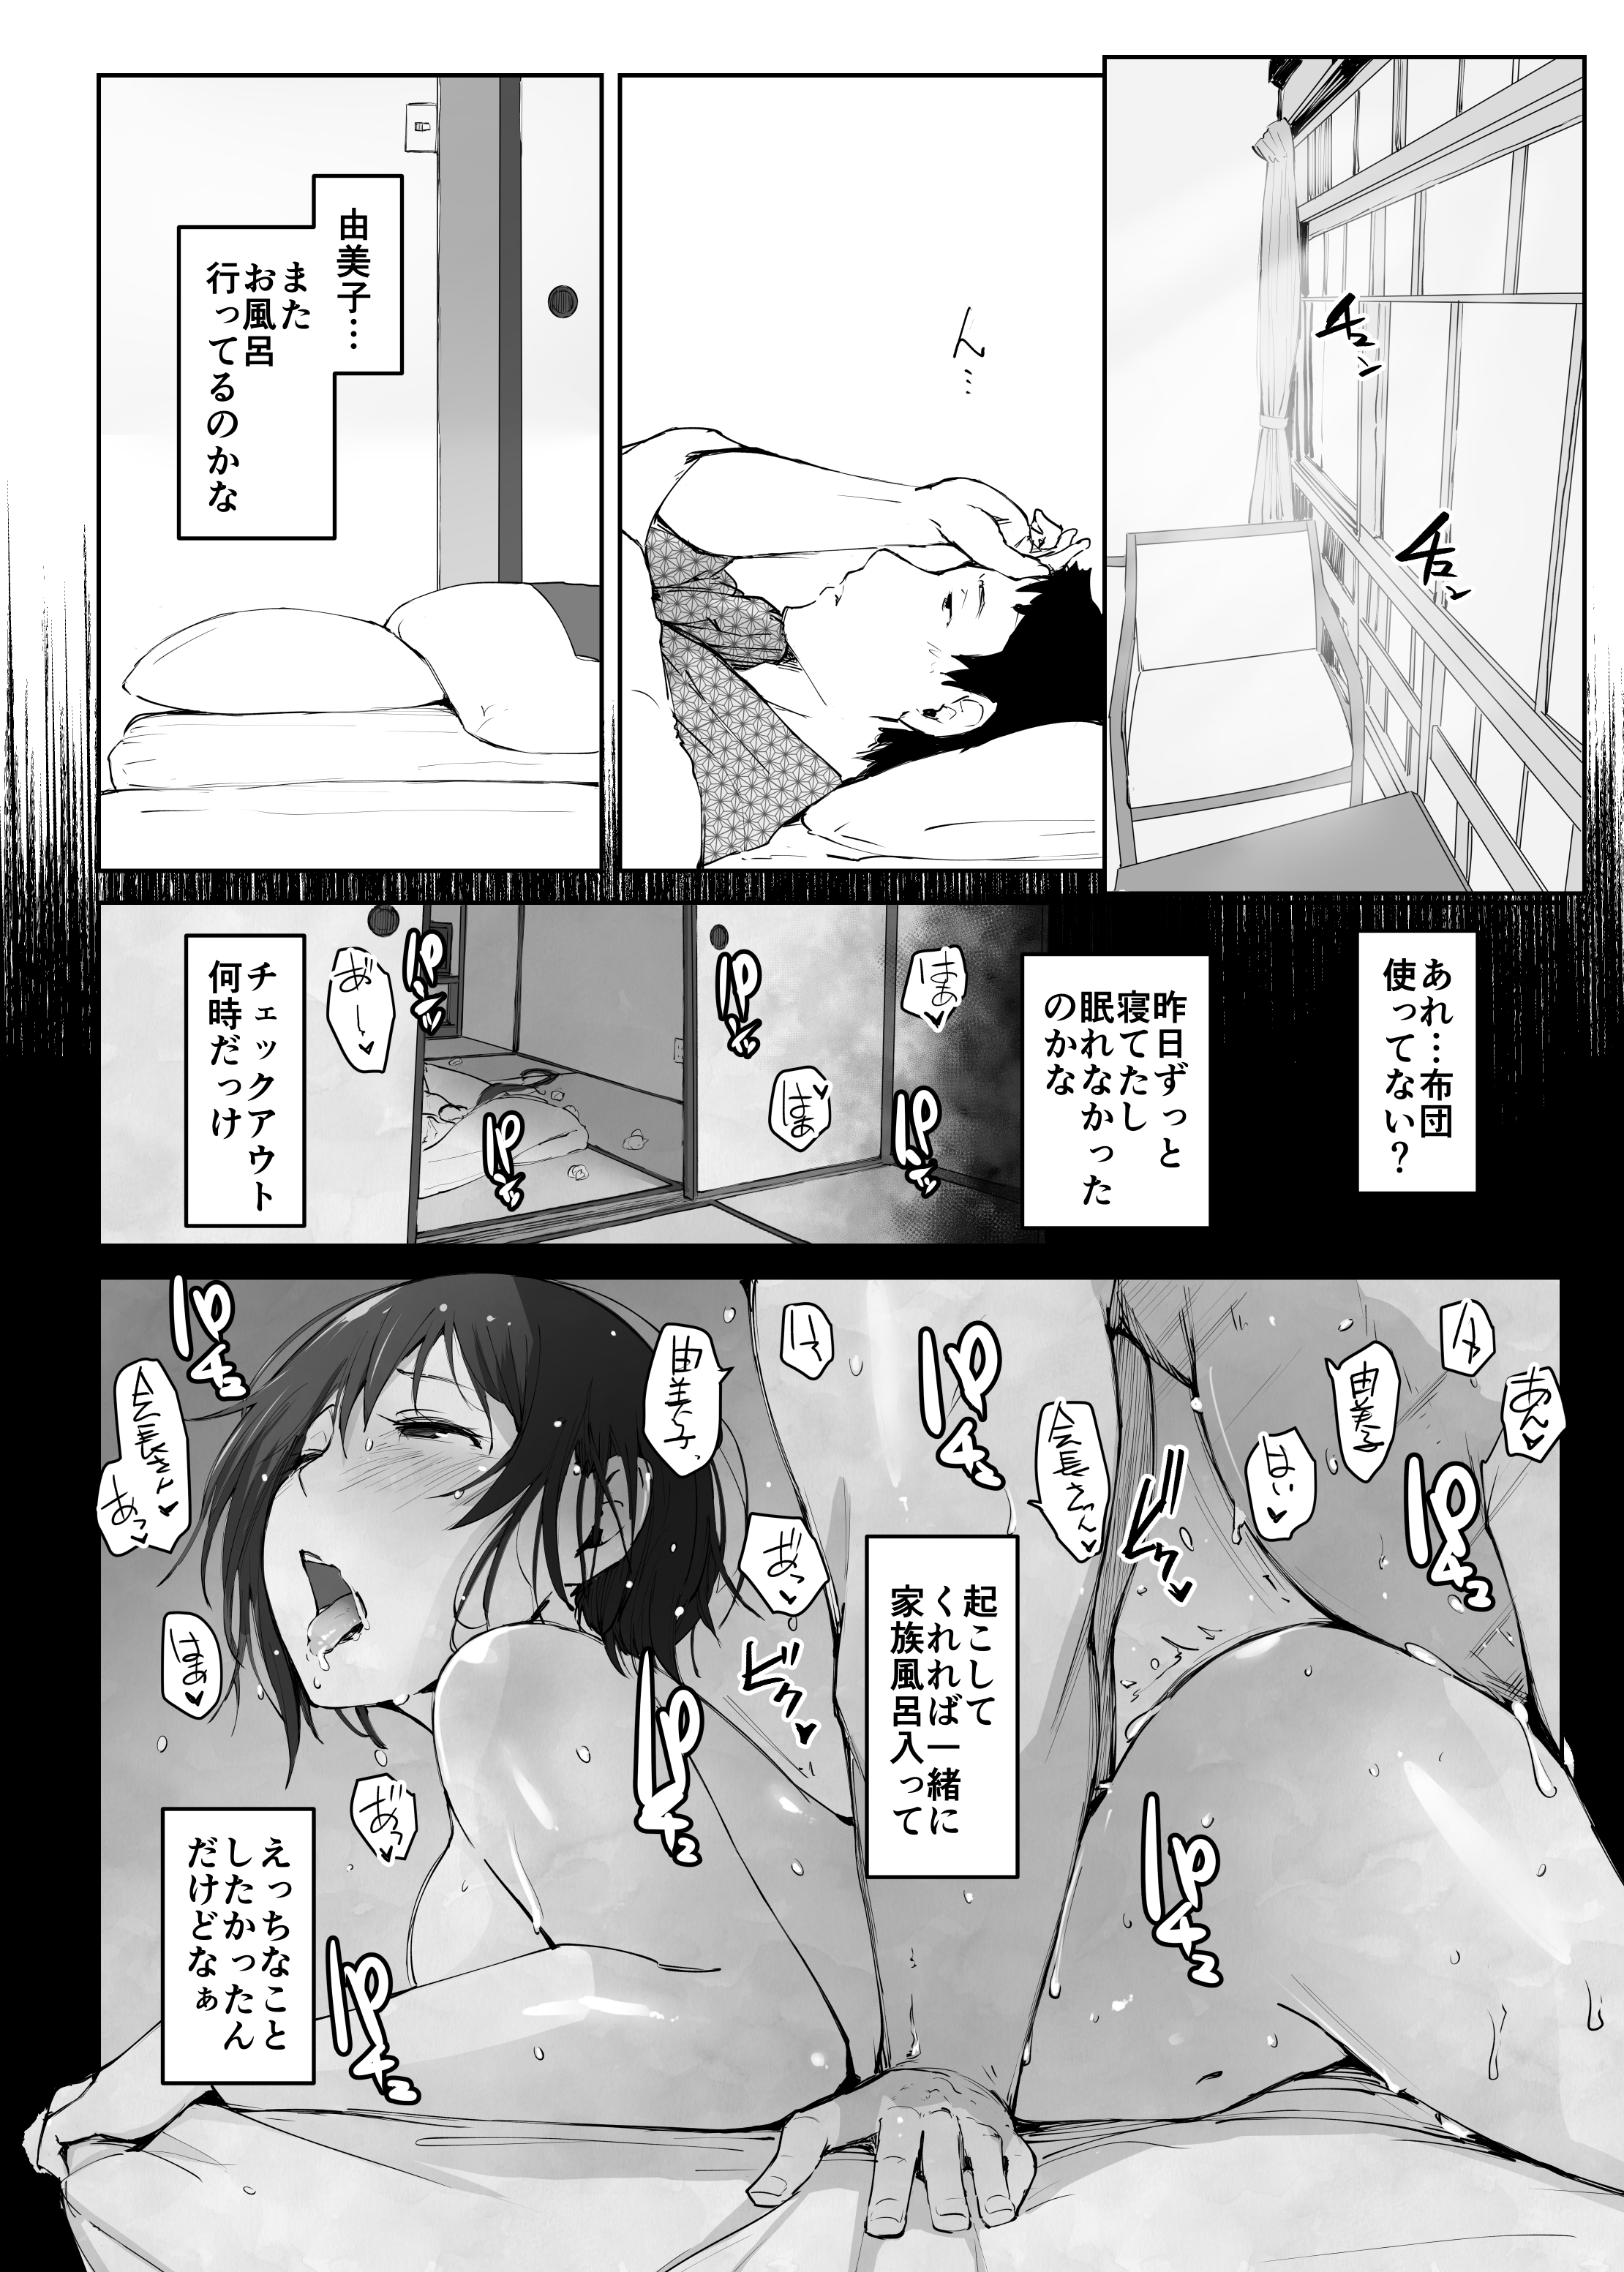 【オリジナル】人妻の由美子さんが旅行先でおじさんに寝取られて中出しをキメられてしまう…。の画像35枚目